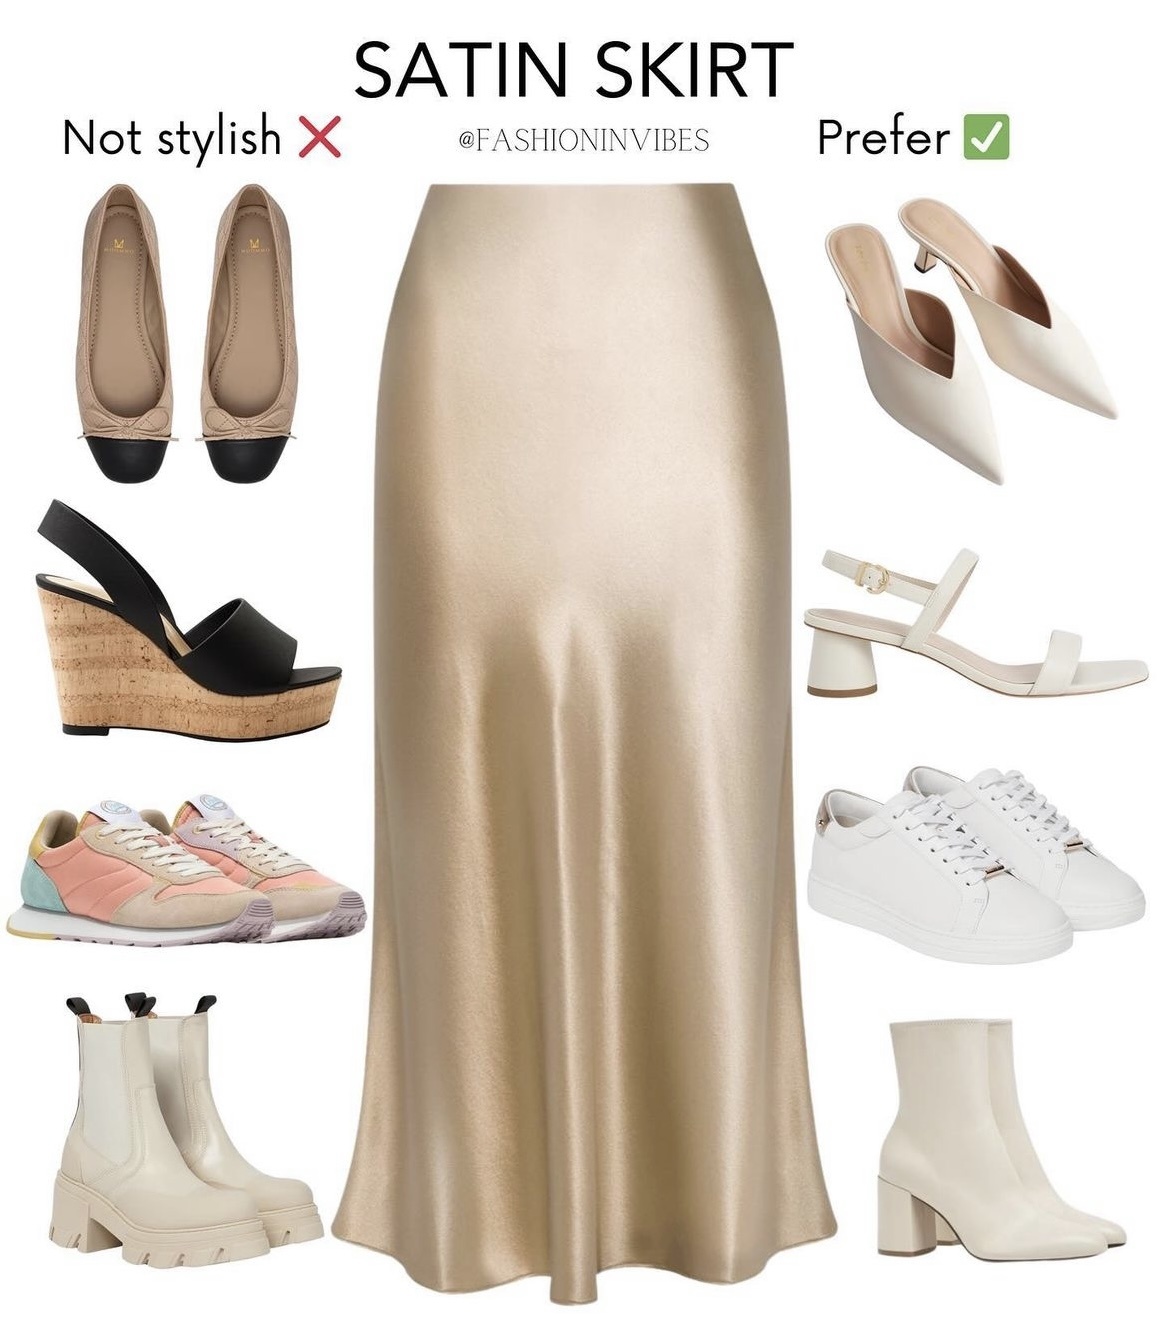 La jupe satin : l’incontournable mode et ses secrets de style